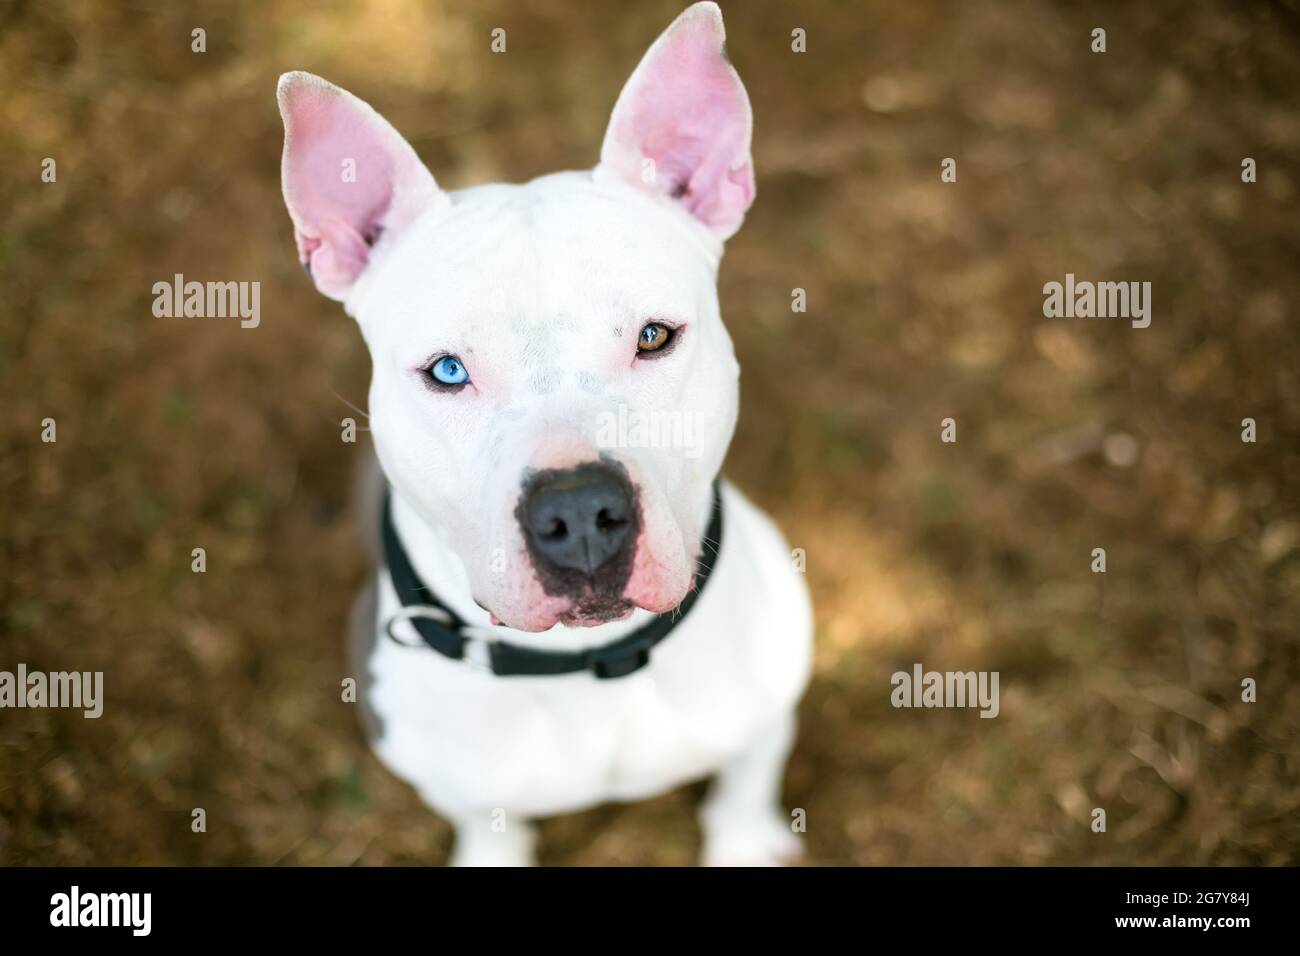 Un chien blanc de race mixte Pit Bull Terrier avec hétérochromie dans ses yeux, un œil bleu et un œil marron, regardant l'appareil photo Banque D'Images